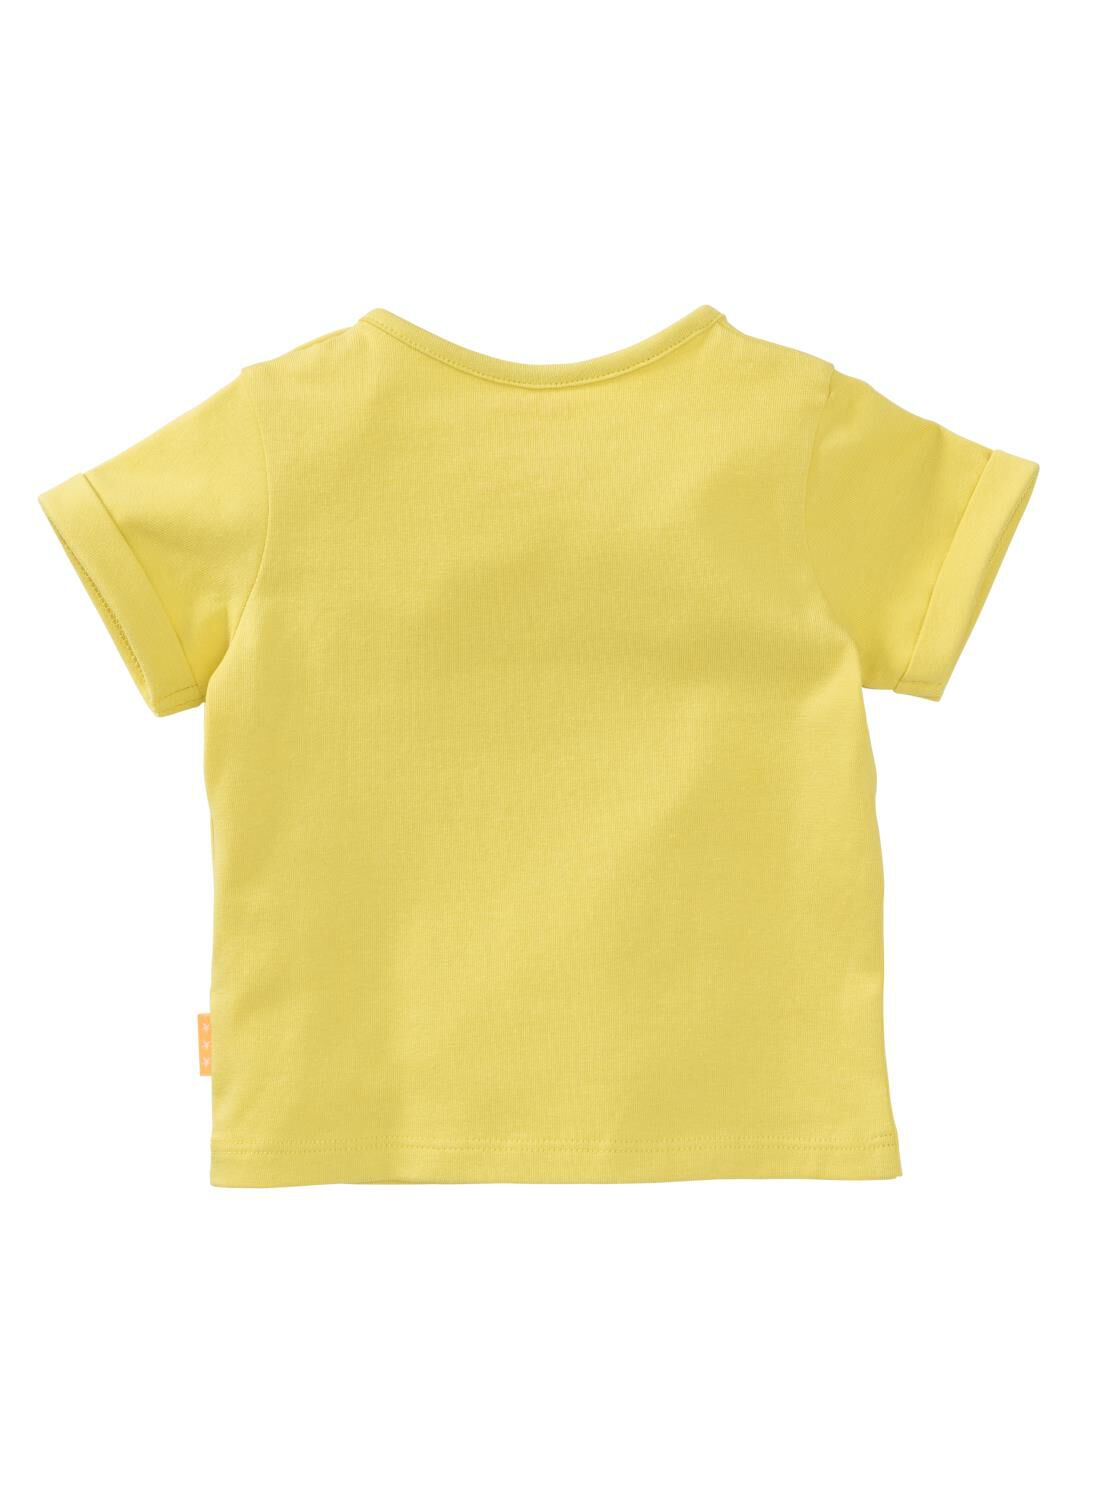 Baby T-shirt Geel (geel)